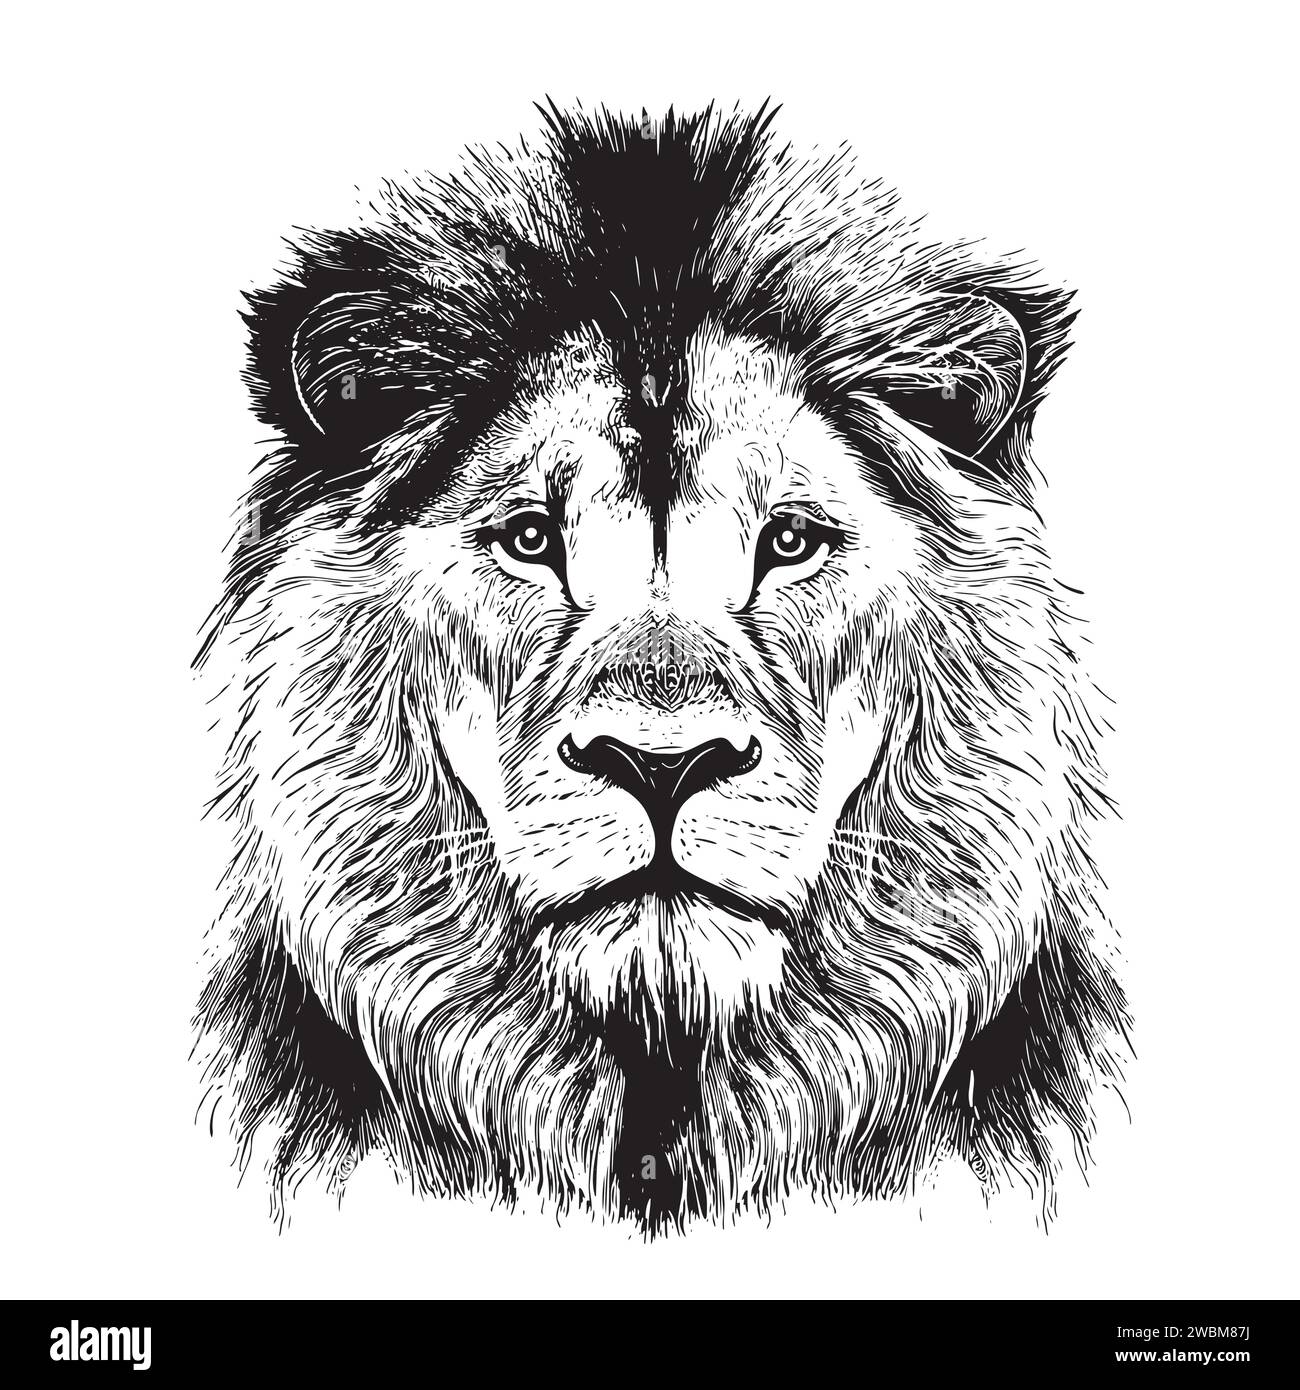 Löwe Porträt Löwenkopf Skizze Hand gezeichnet Gravur Stil Wild Tiere Vektor Illustration Stock Vektor